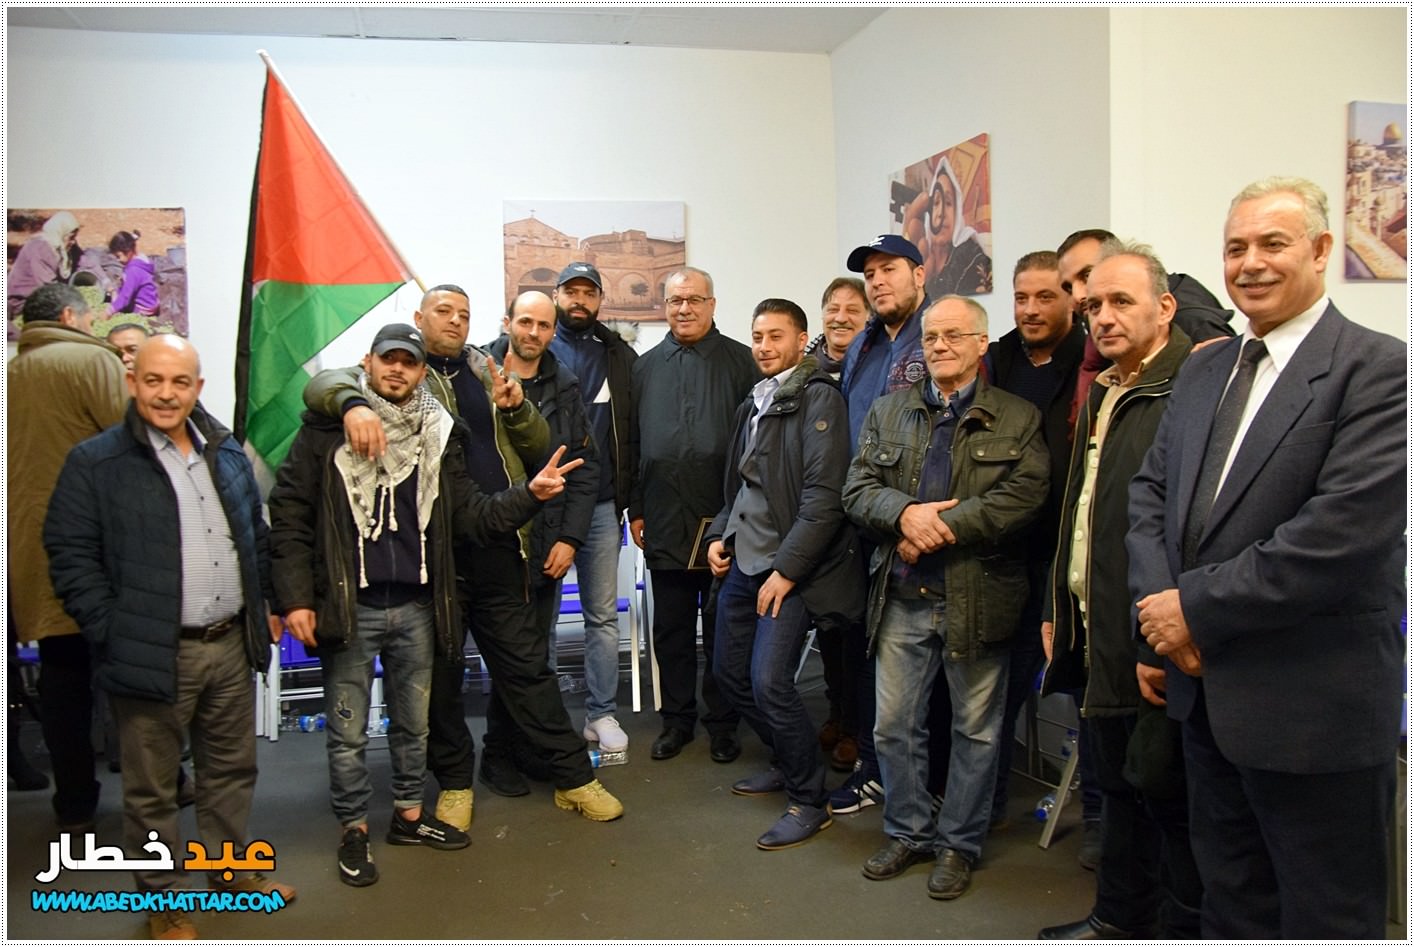 المجلس الفلسطيني المركزي في المانيا دعا الى جلسة حوارية تشاورية حول وحدة العمل الفلسطيني في برلين